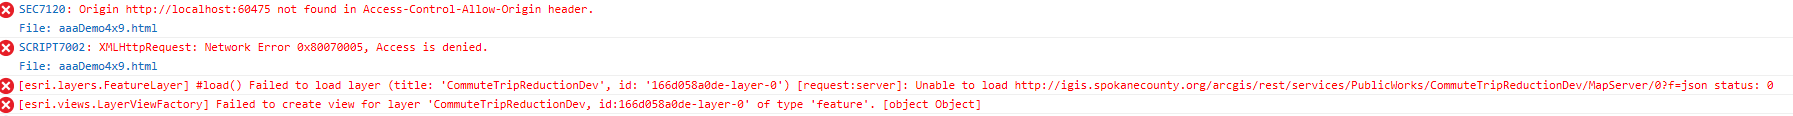 developer console error messages